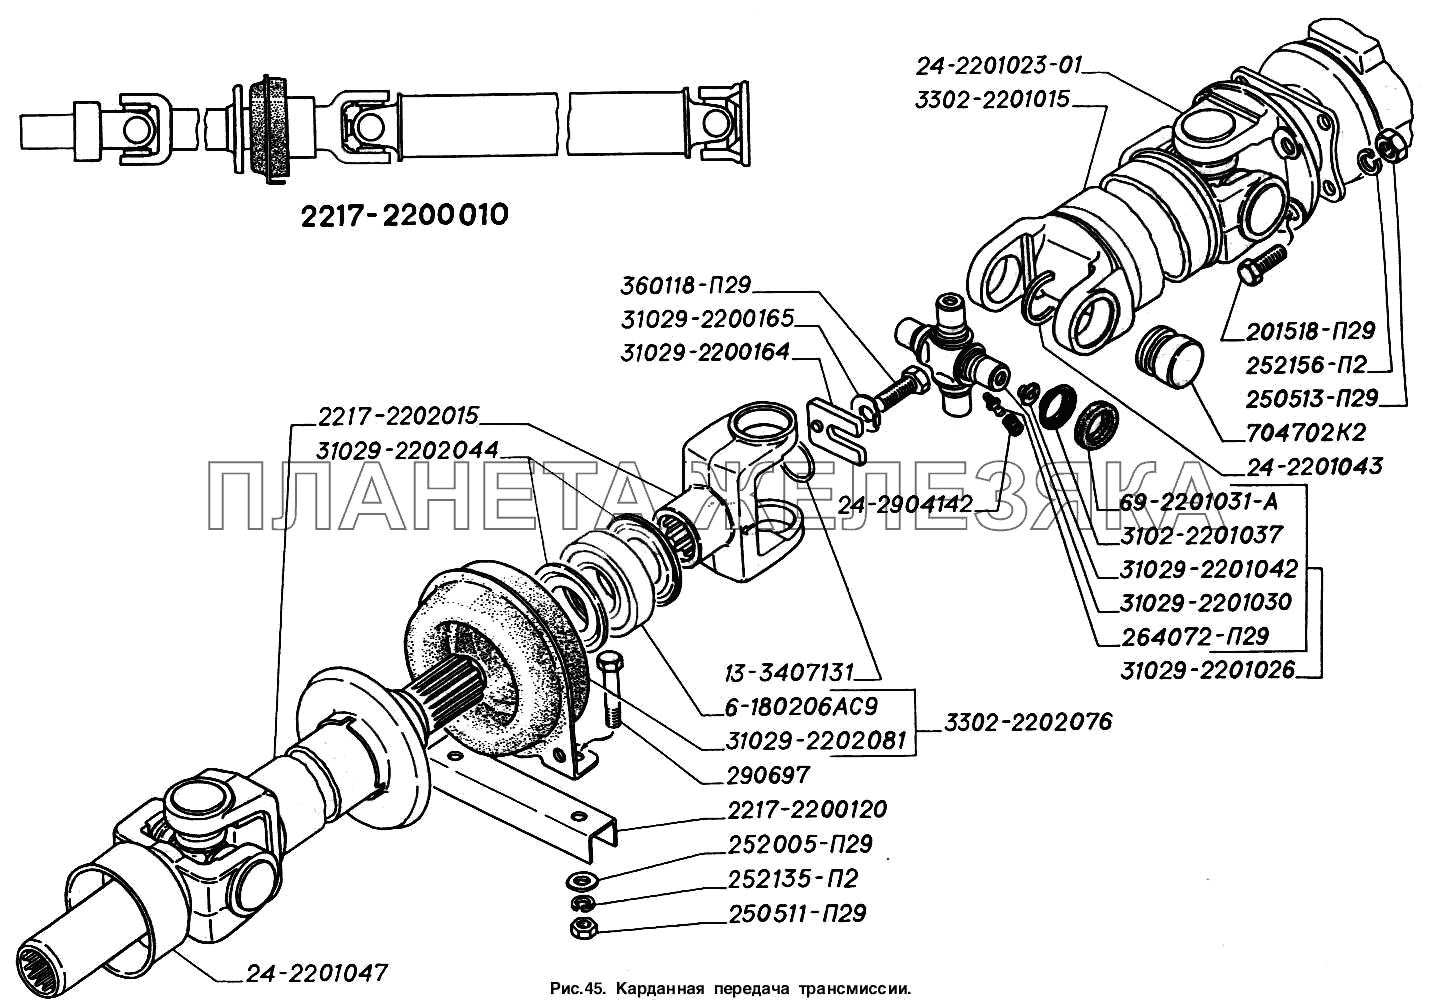 Карданная передача трансмиссии ГАЗ-2217 (Соболь)